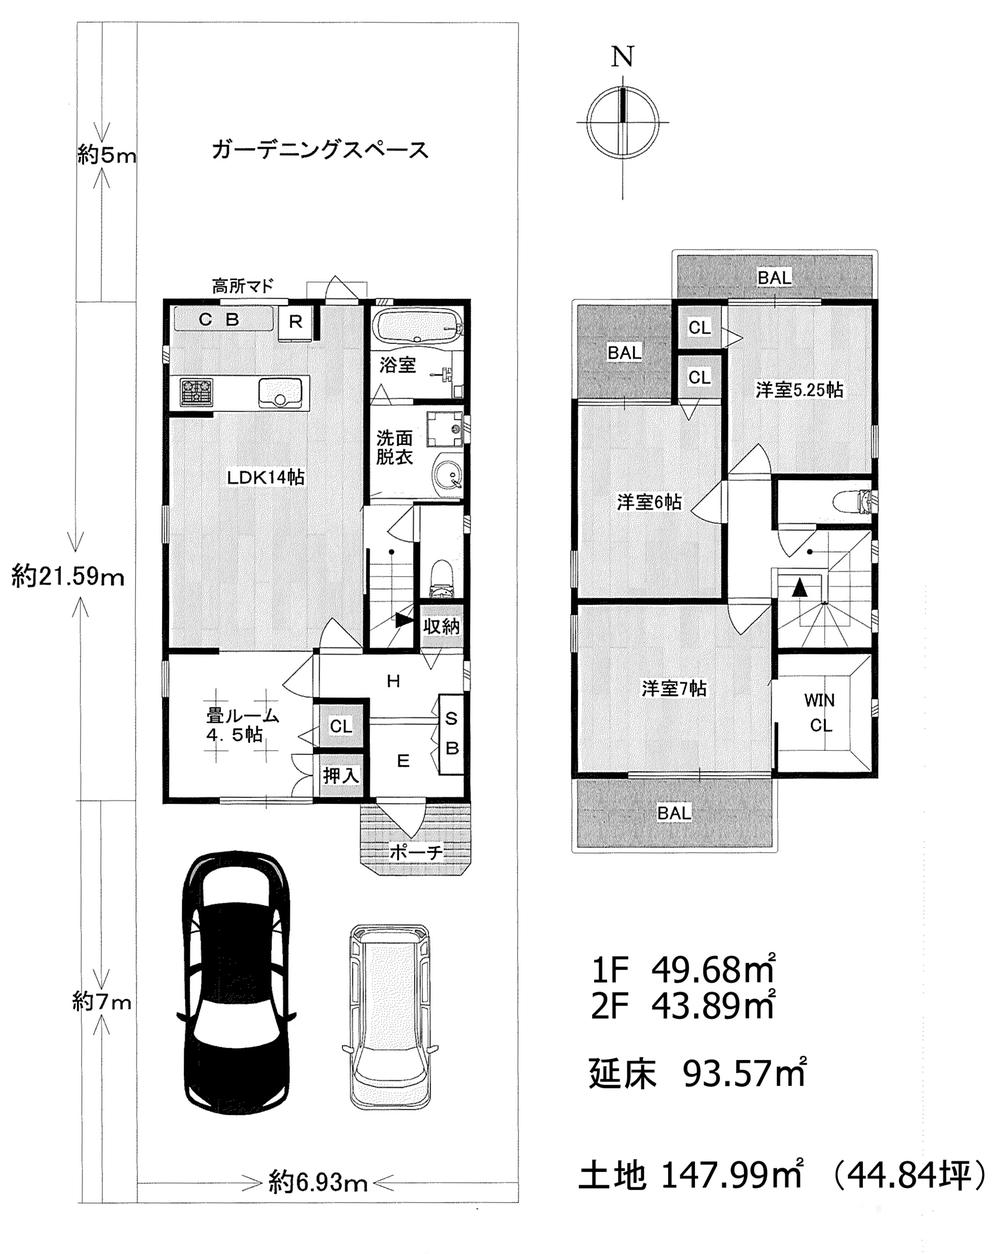 Building plan example (floor plan). Building plan example Building price 14 million yen 1F 49.68 sq m   2F 43.89 sq m Total floor area      93.57 sq m